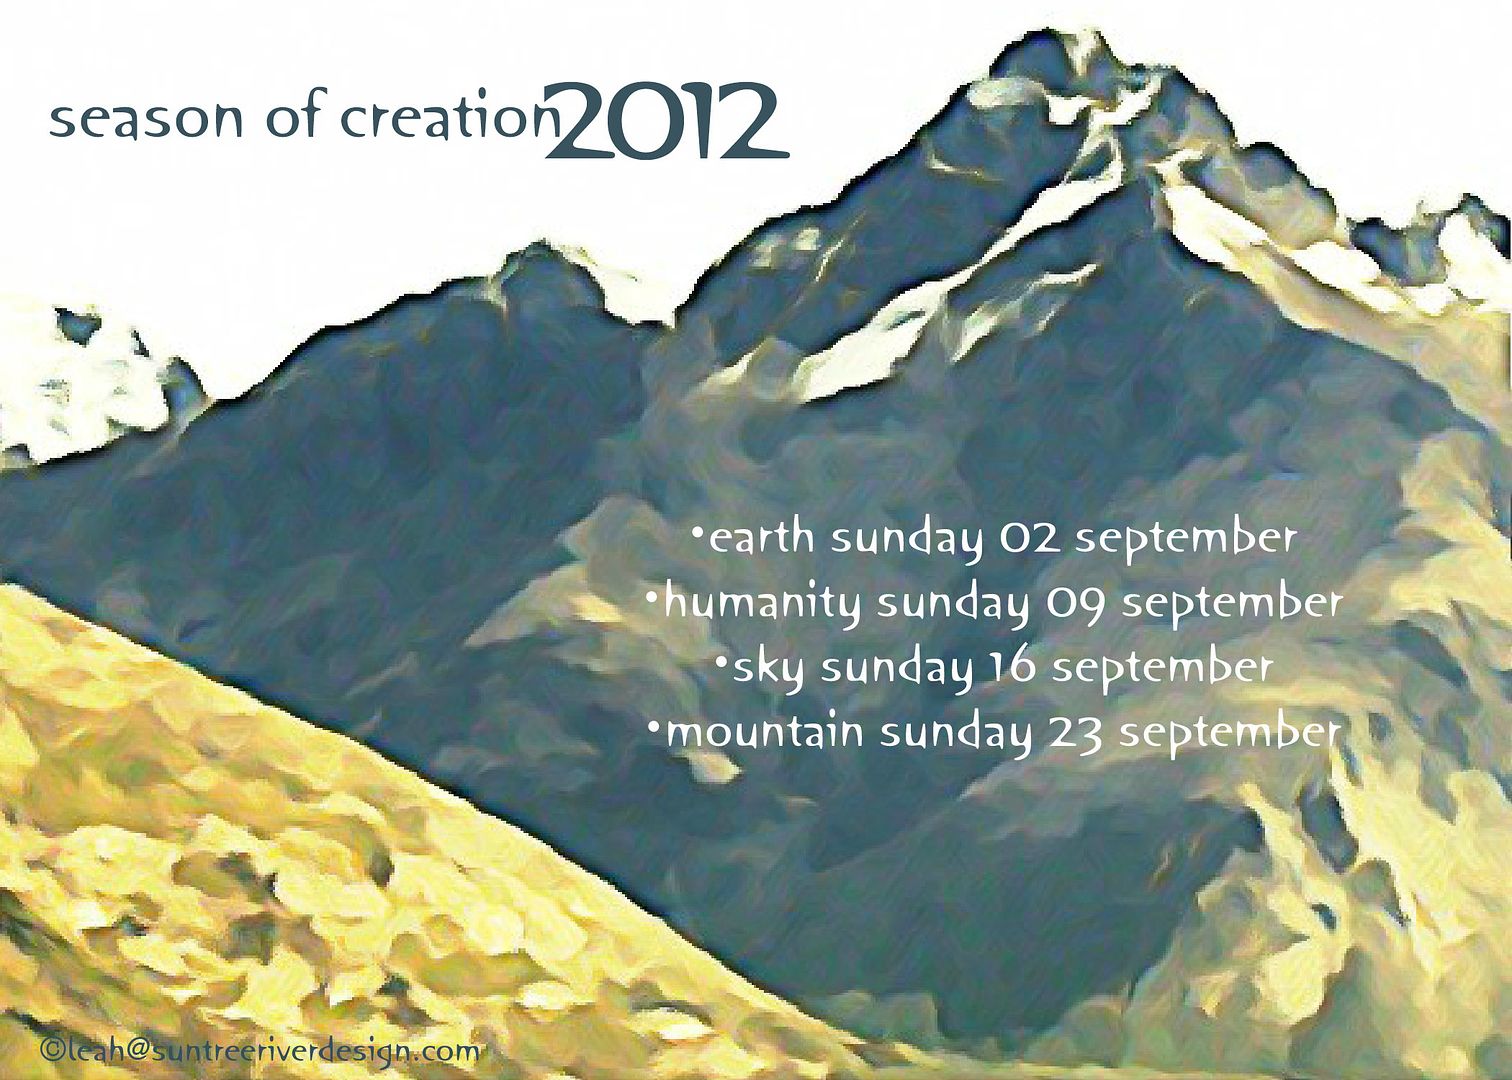 season of creation 2012